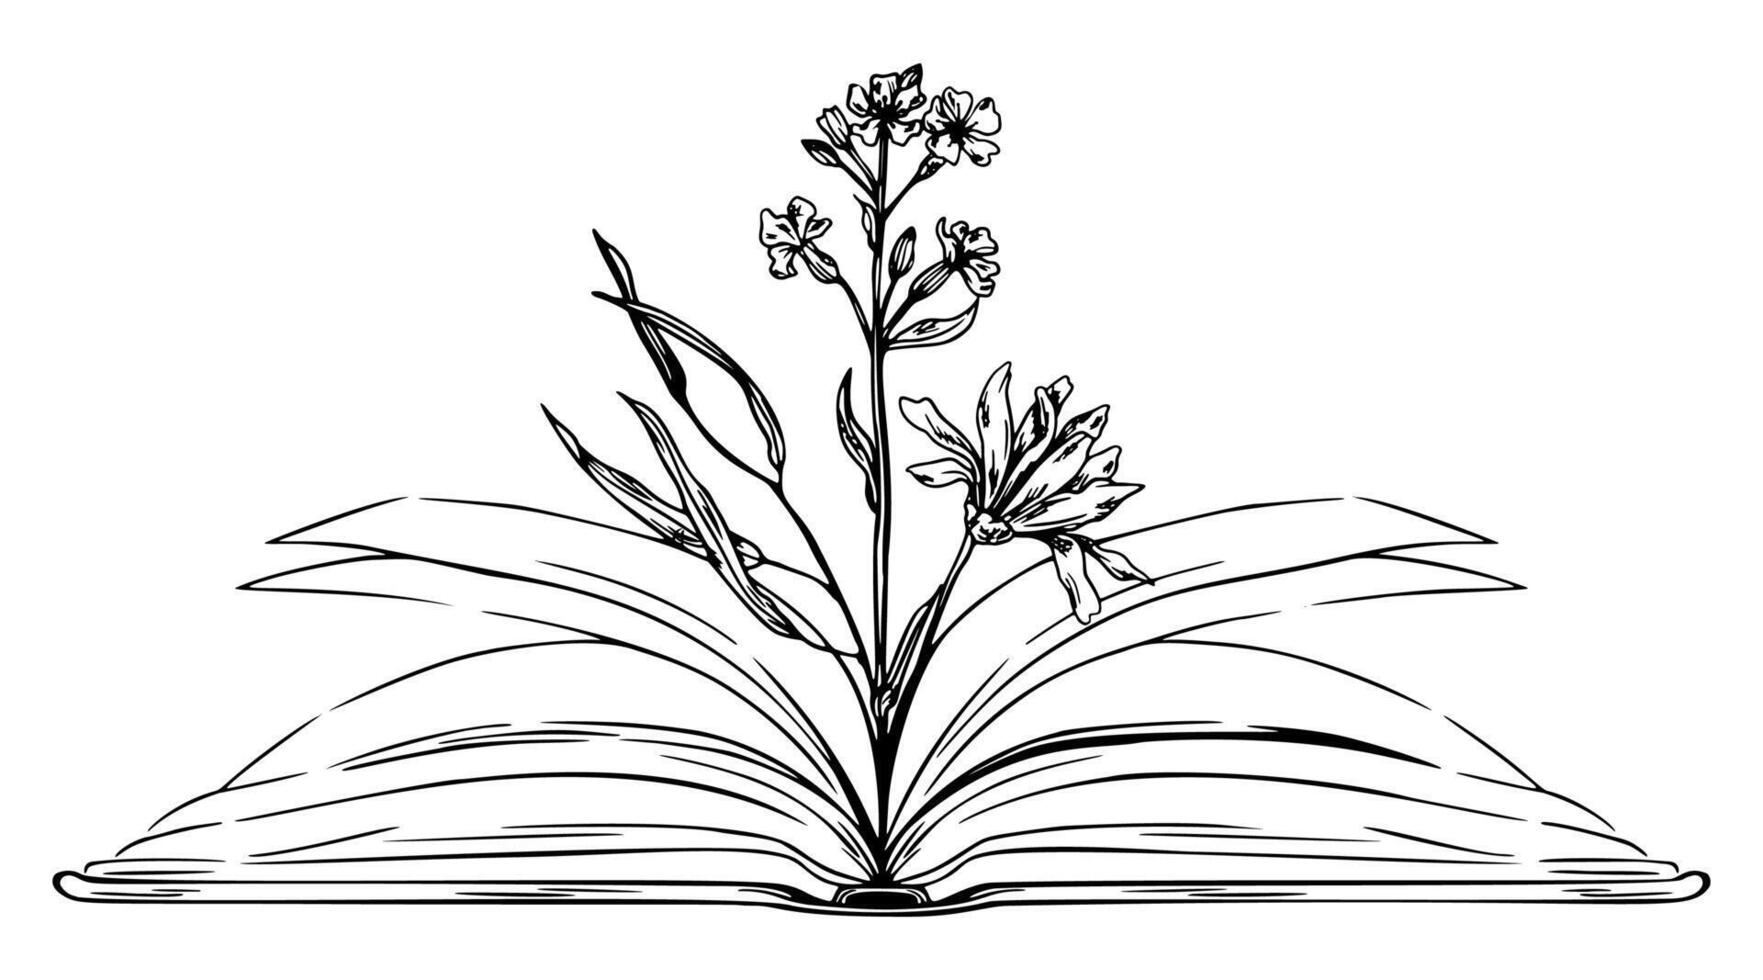 Open boek met bloemen binnen, hand- getrokken schetsen illustratie vector